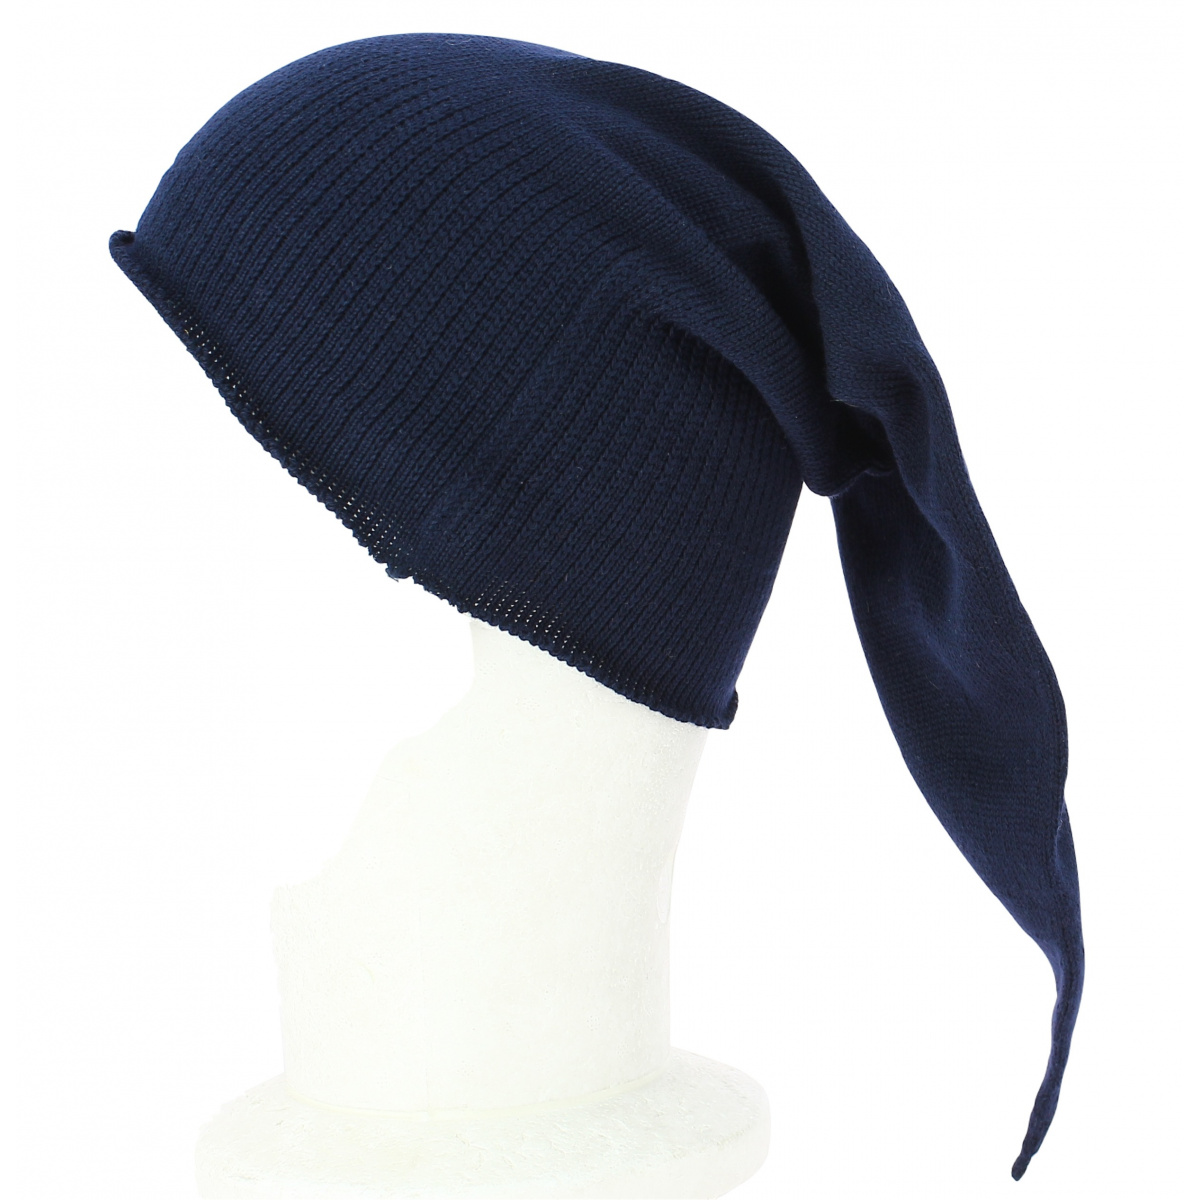 Bonnet de nuit traditionnel bleu marine pointu bonnet de nuit coton unisexe  adulte hommes femmes coton bonnet de nuit chapeau pour dormir -  France